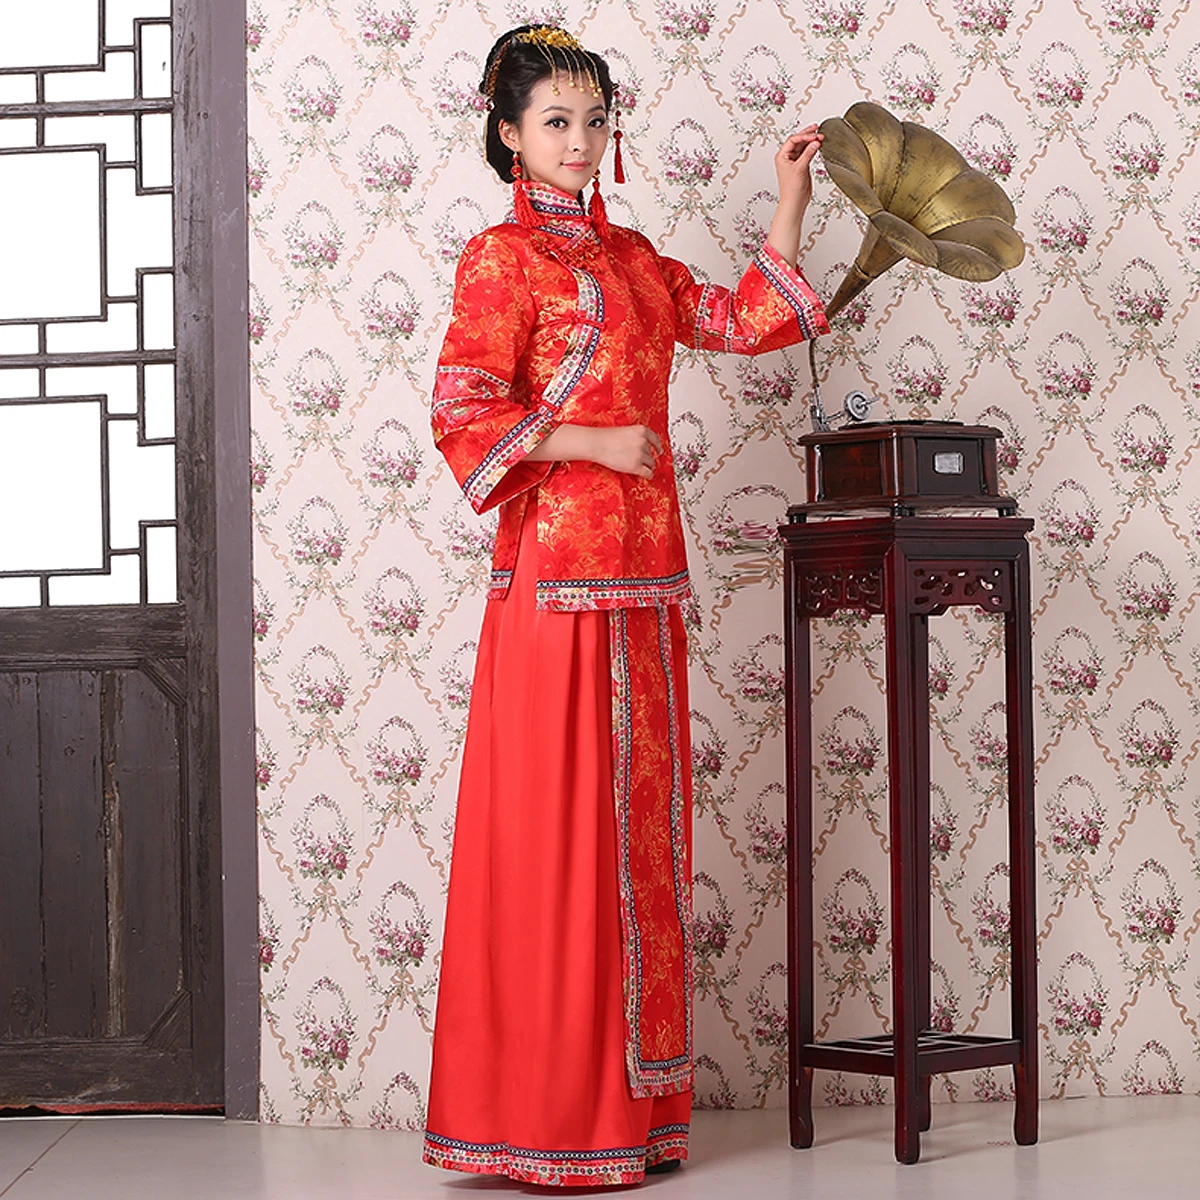 Женское традиционное платье невесты в китайском стиле, костюм династии Цин, платье для косплея, один комплект, топ + платье